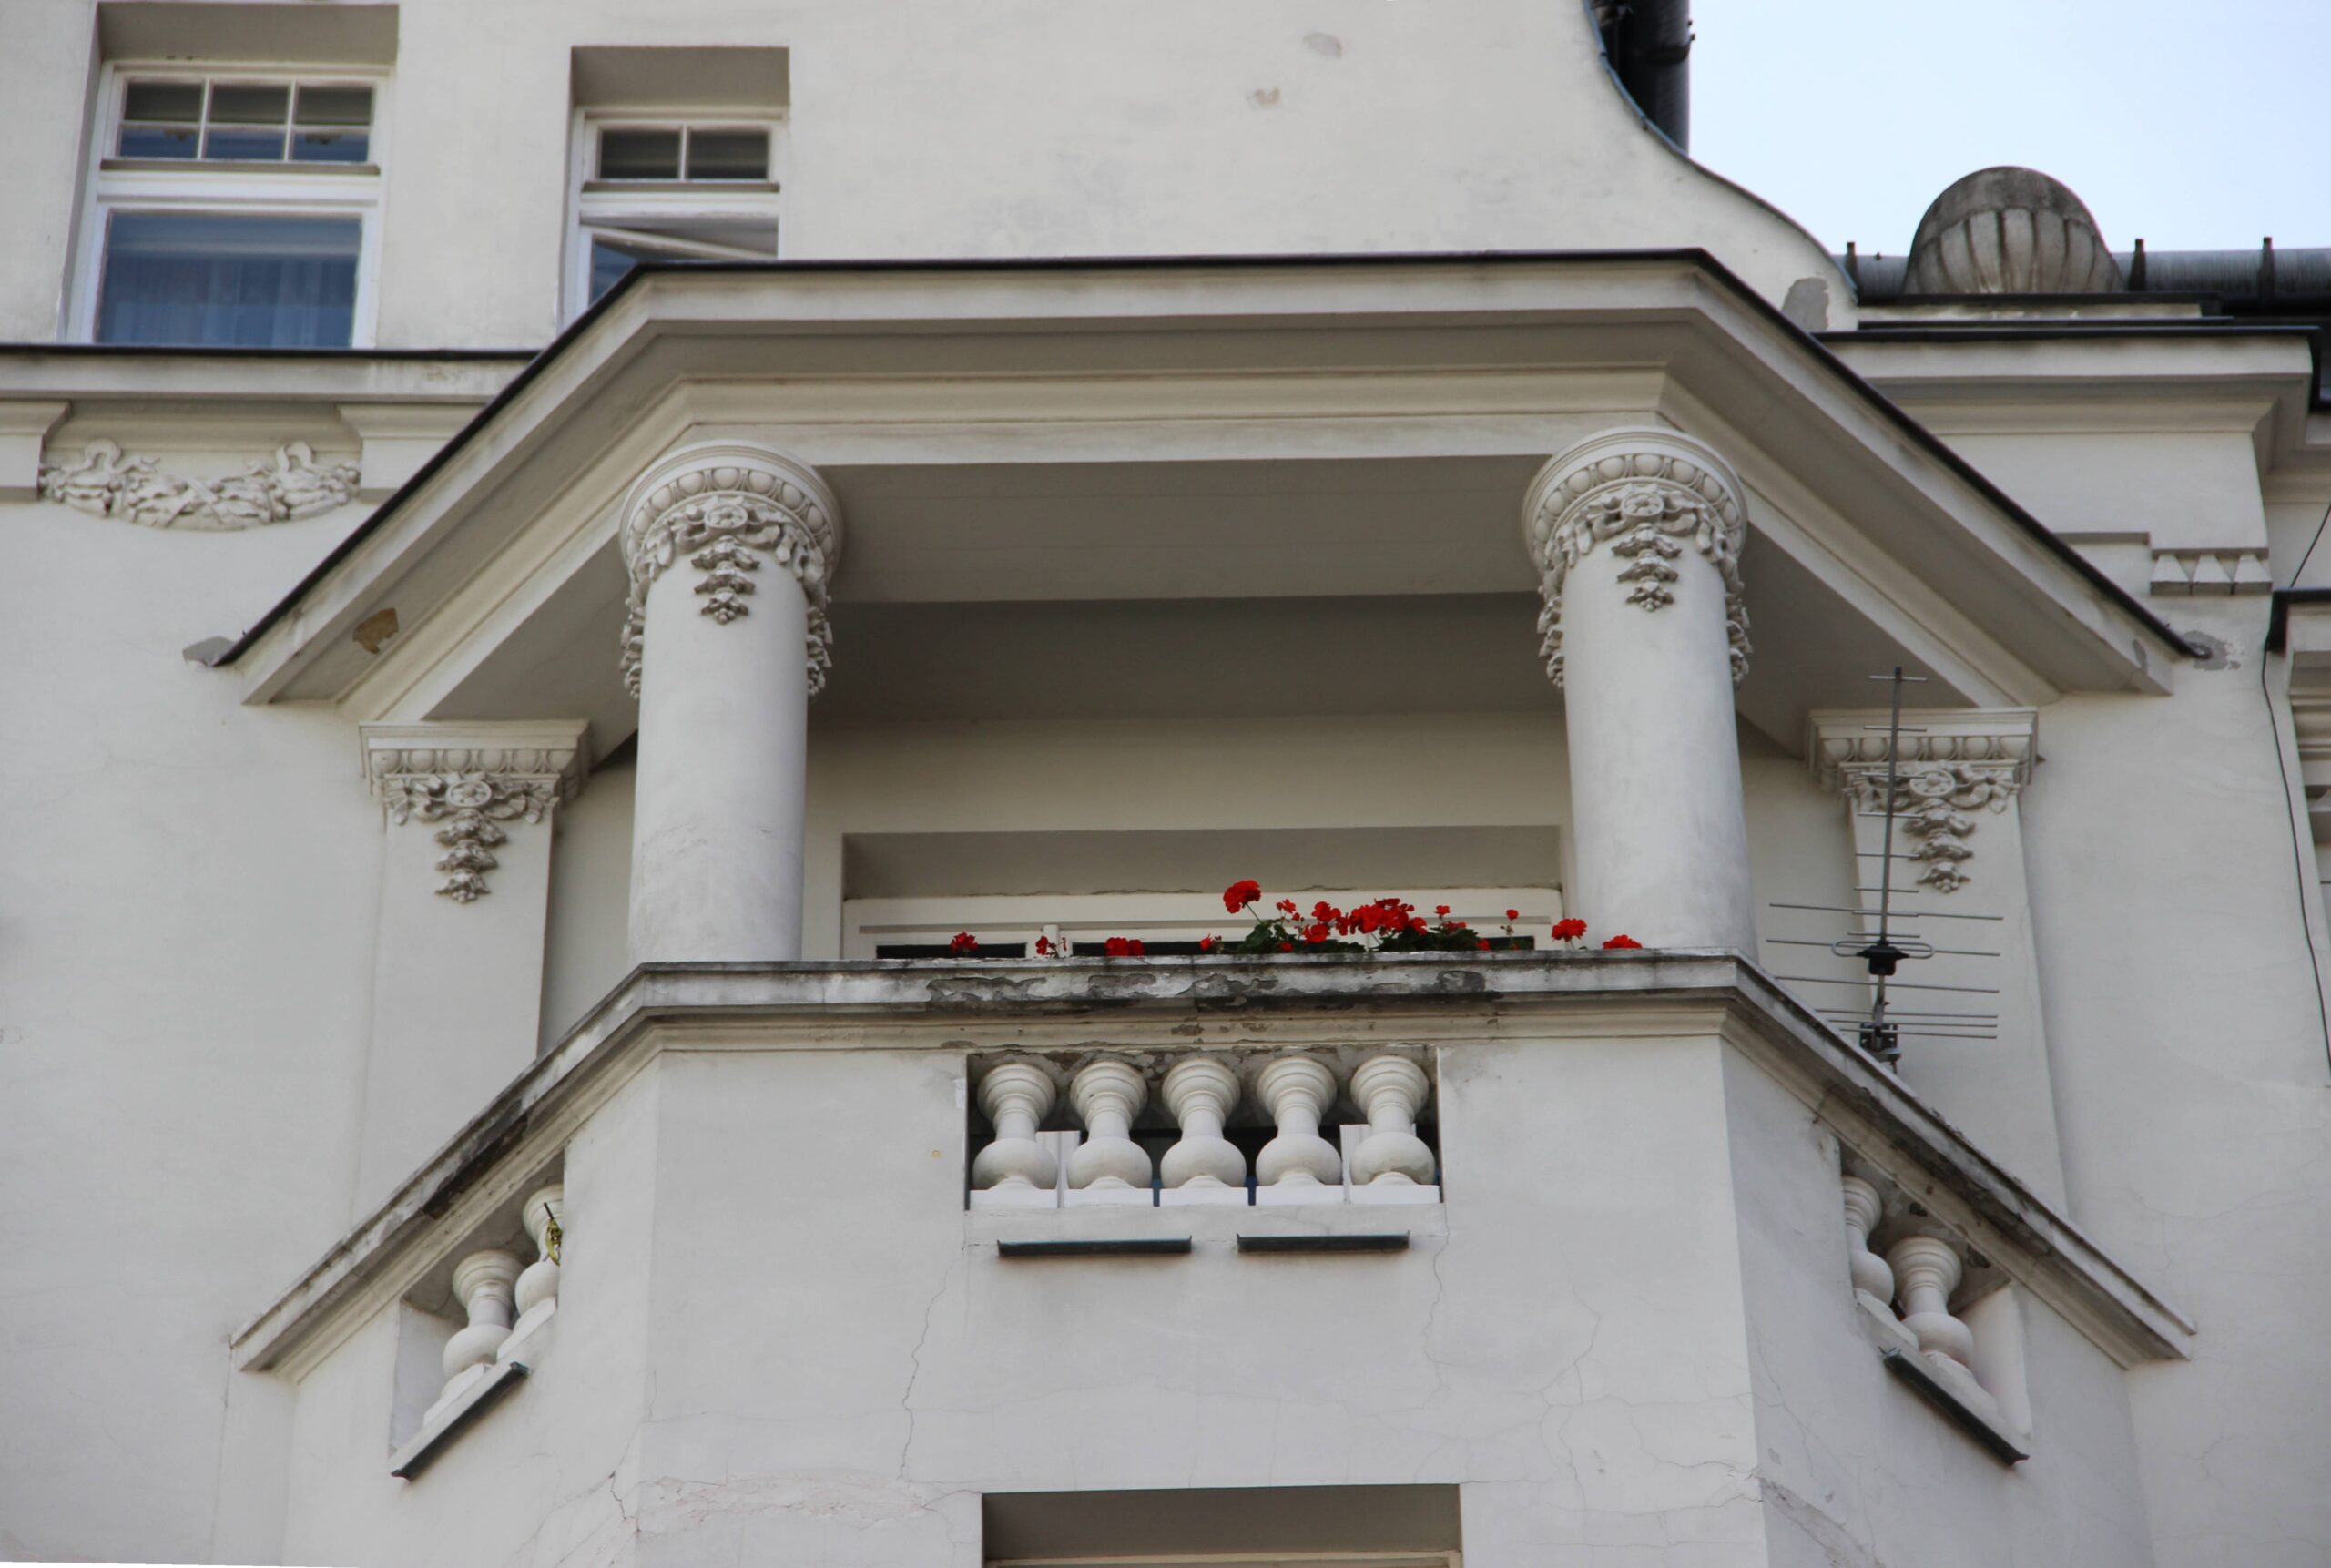 Elewacja frontowa. Balkon wieńczący wykusz. Piętro V-te. Fot. Małgorzata Maksymiuk 2022 r., źródło: AOD III.